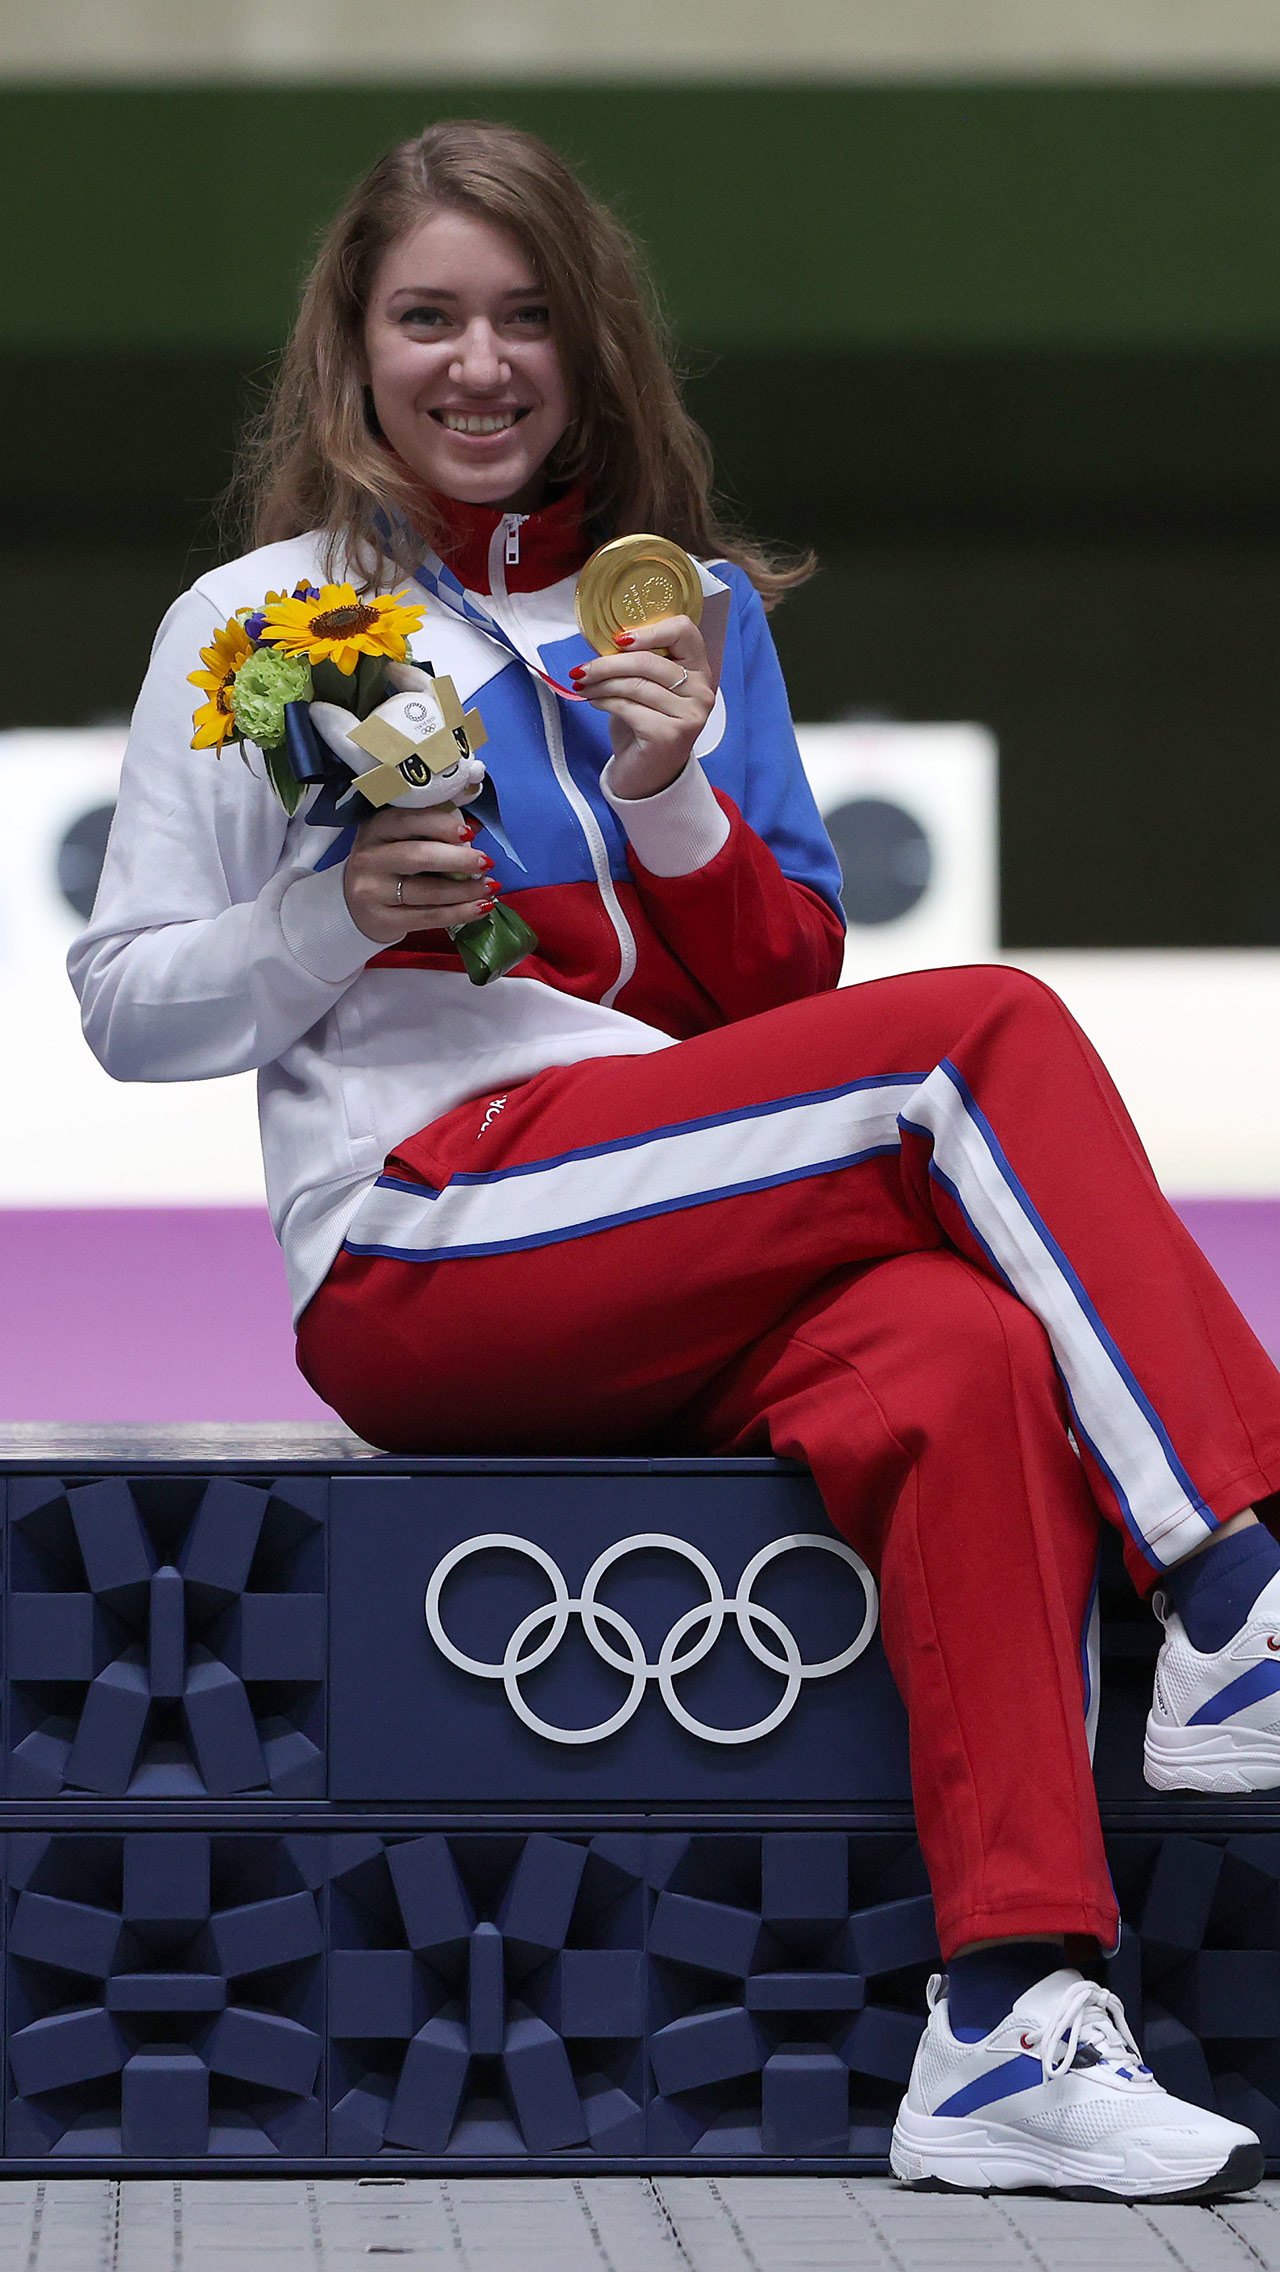 Виталина Бацарашкина выиграла олимпийские награды в каждом виде стрельбы, в котором участвовала: два золота и серебро. До неё ни одному из наших стрелков не удавалось выиграть сразу три медали Игр.